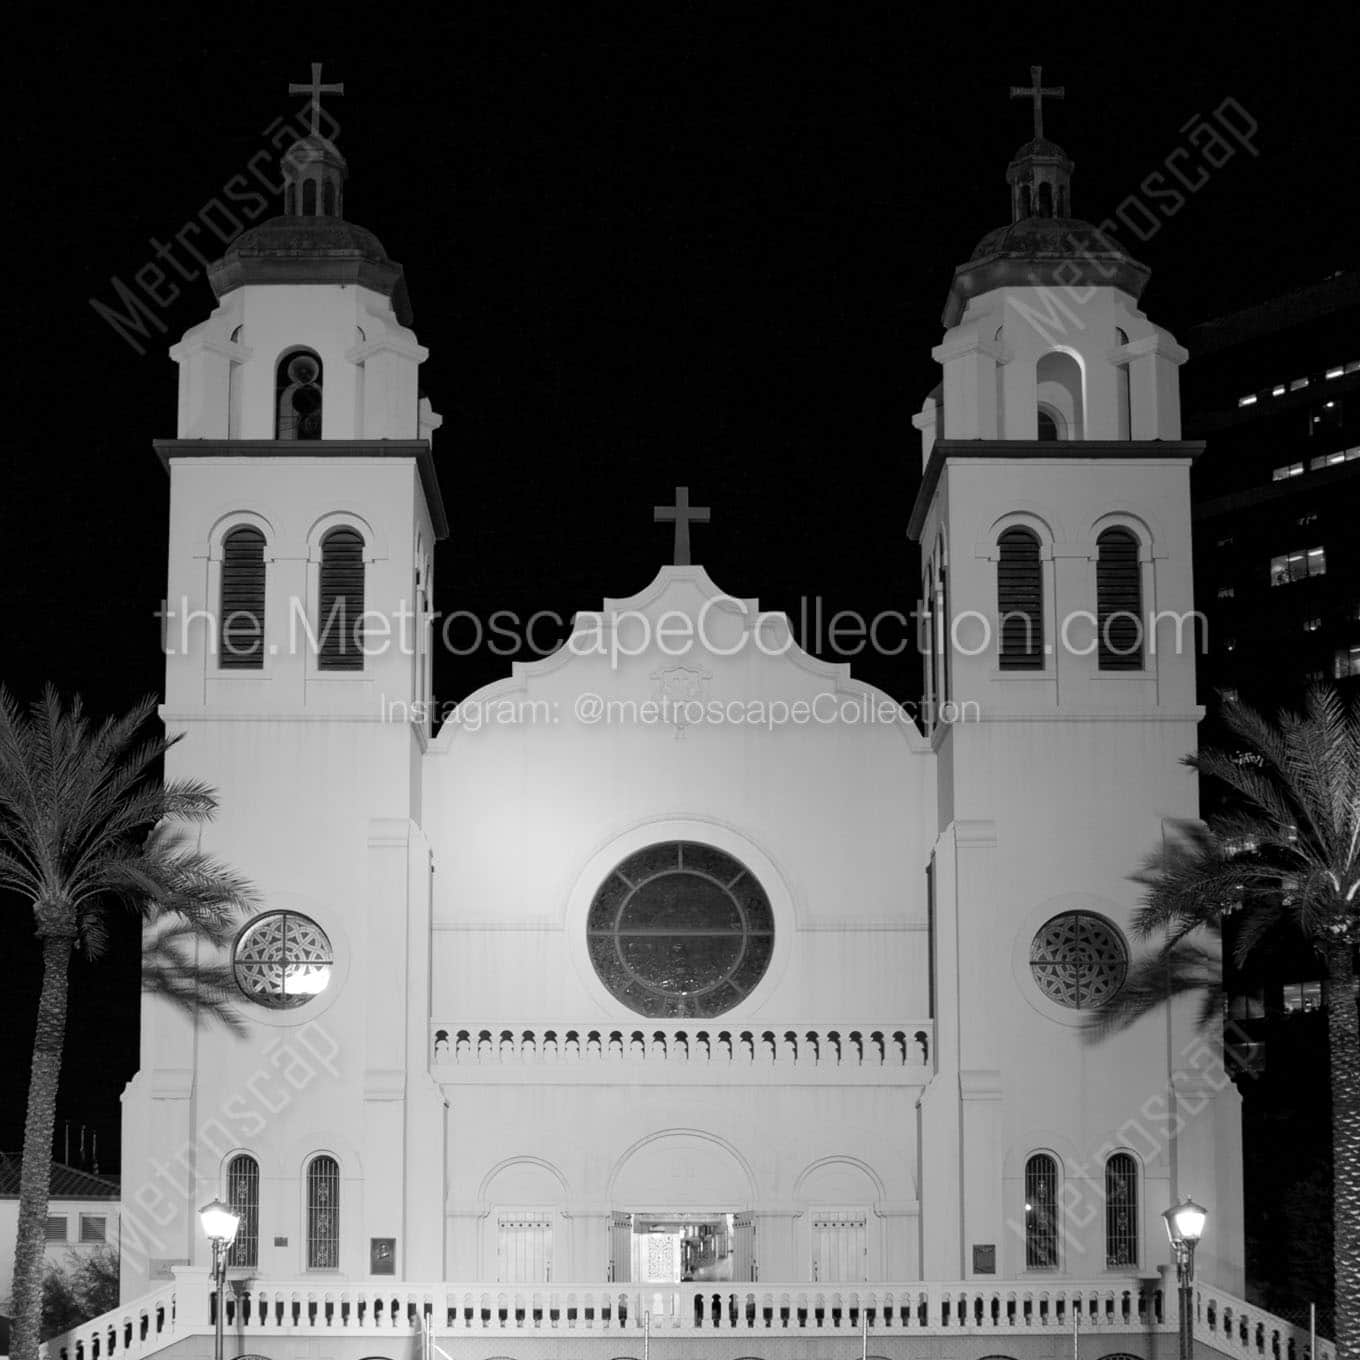 phoenix st marys basilica at night Black & White Wall Art